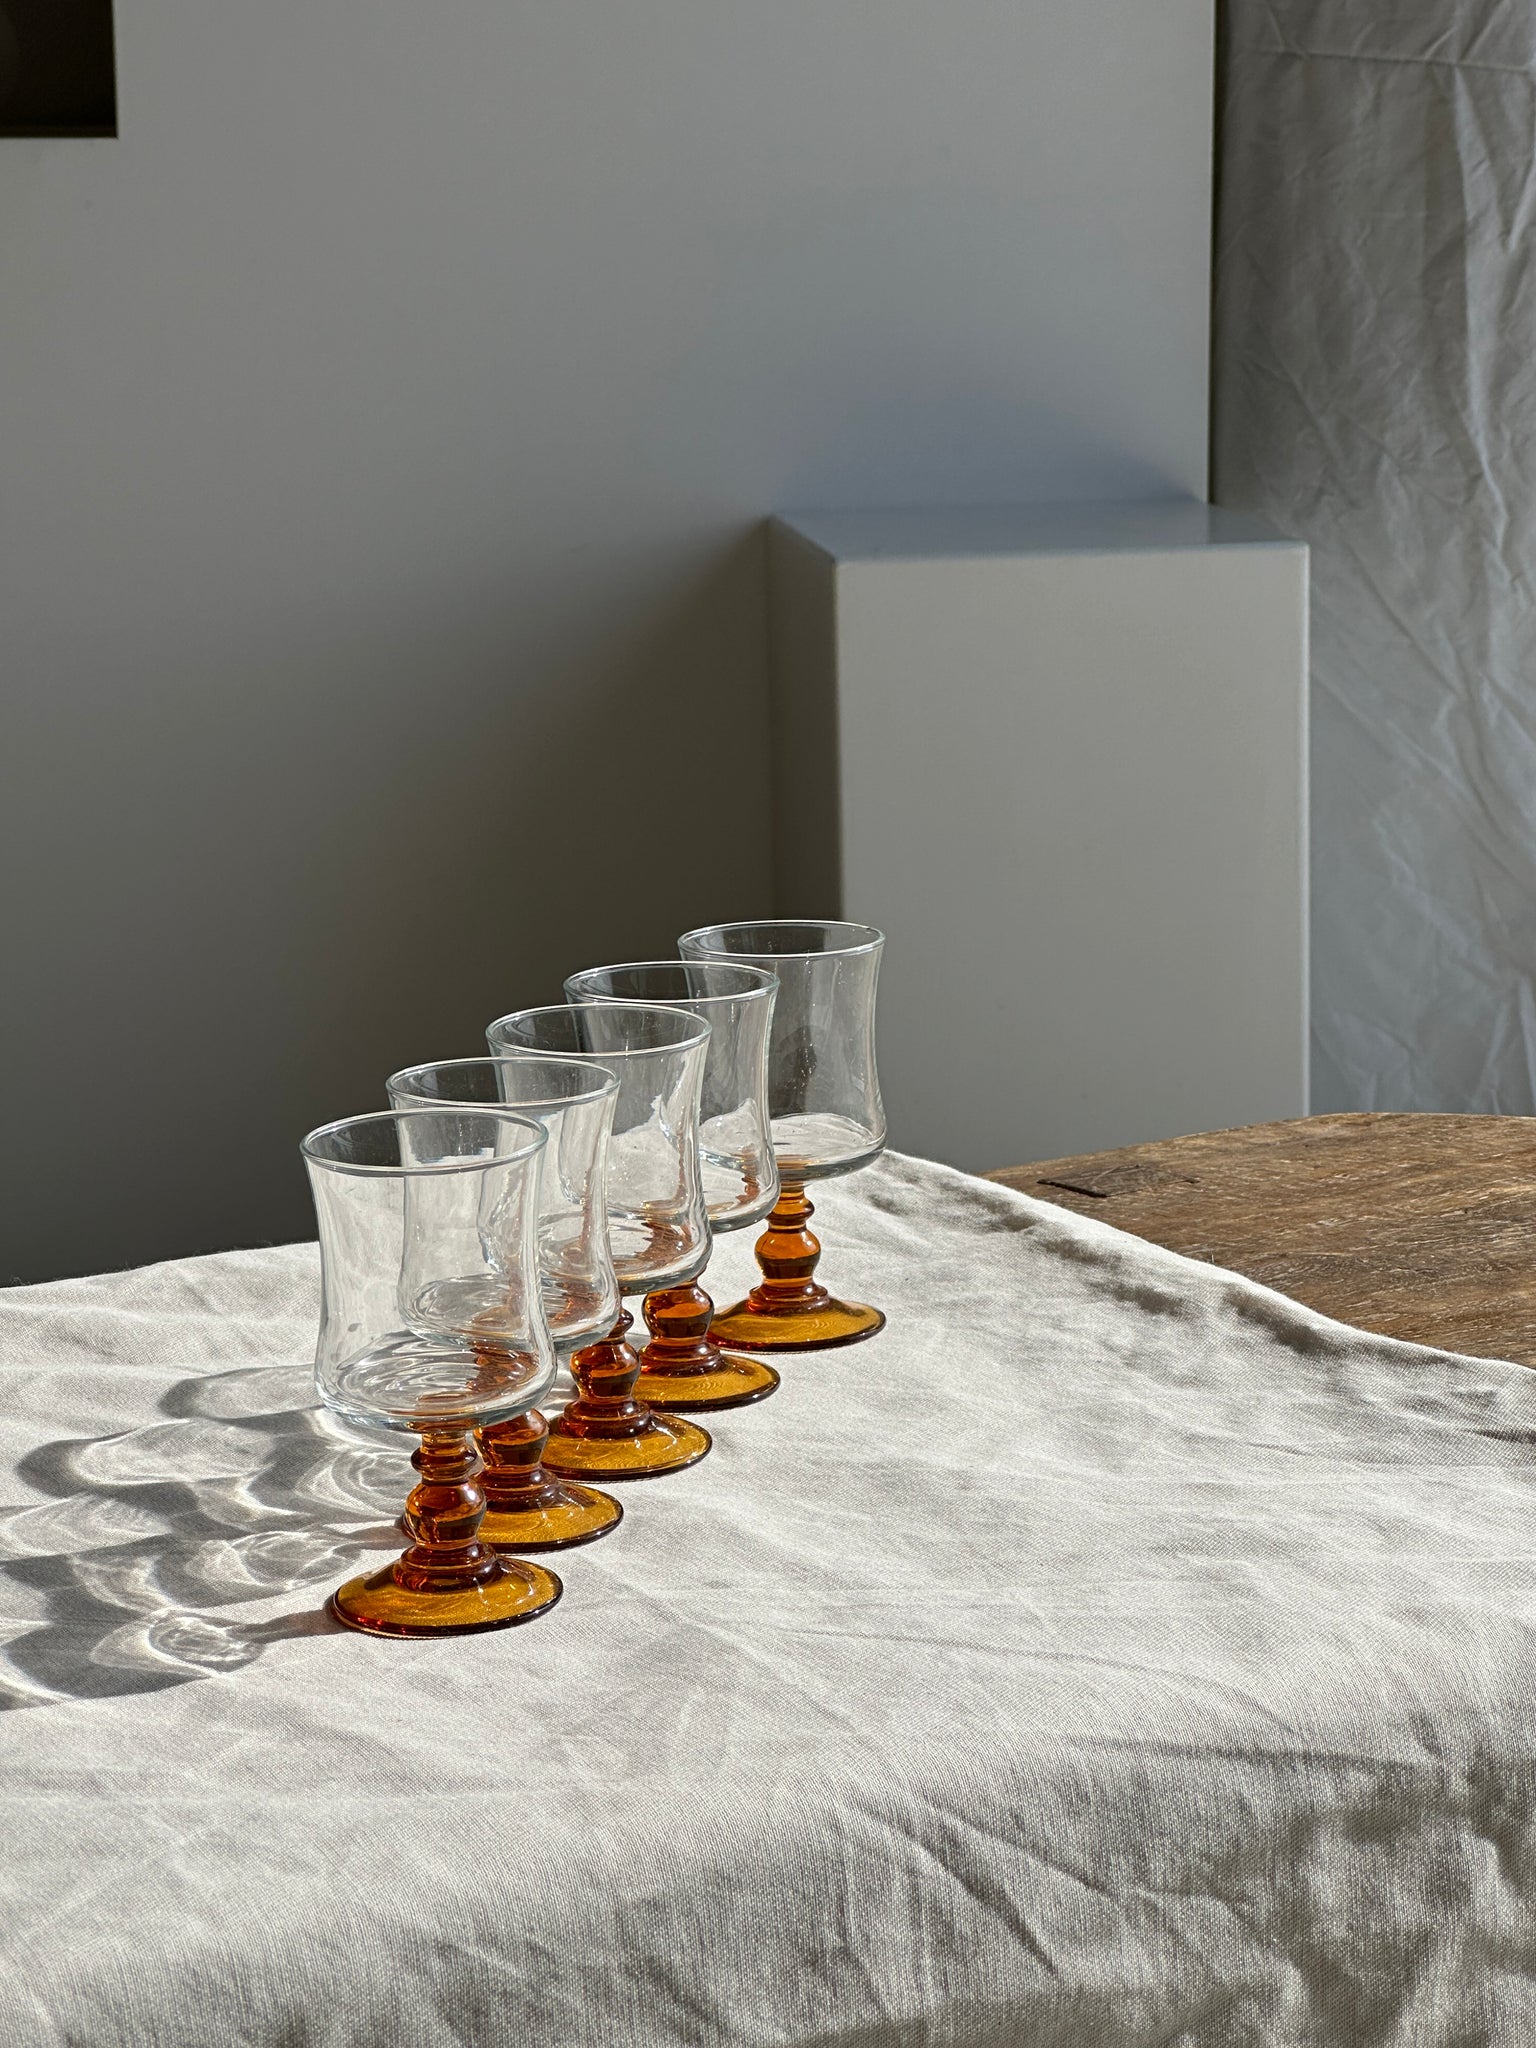 5 petits verres en verre pied coloré orange